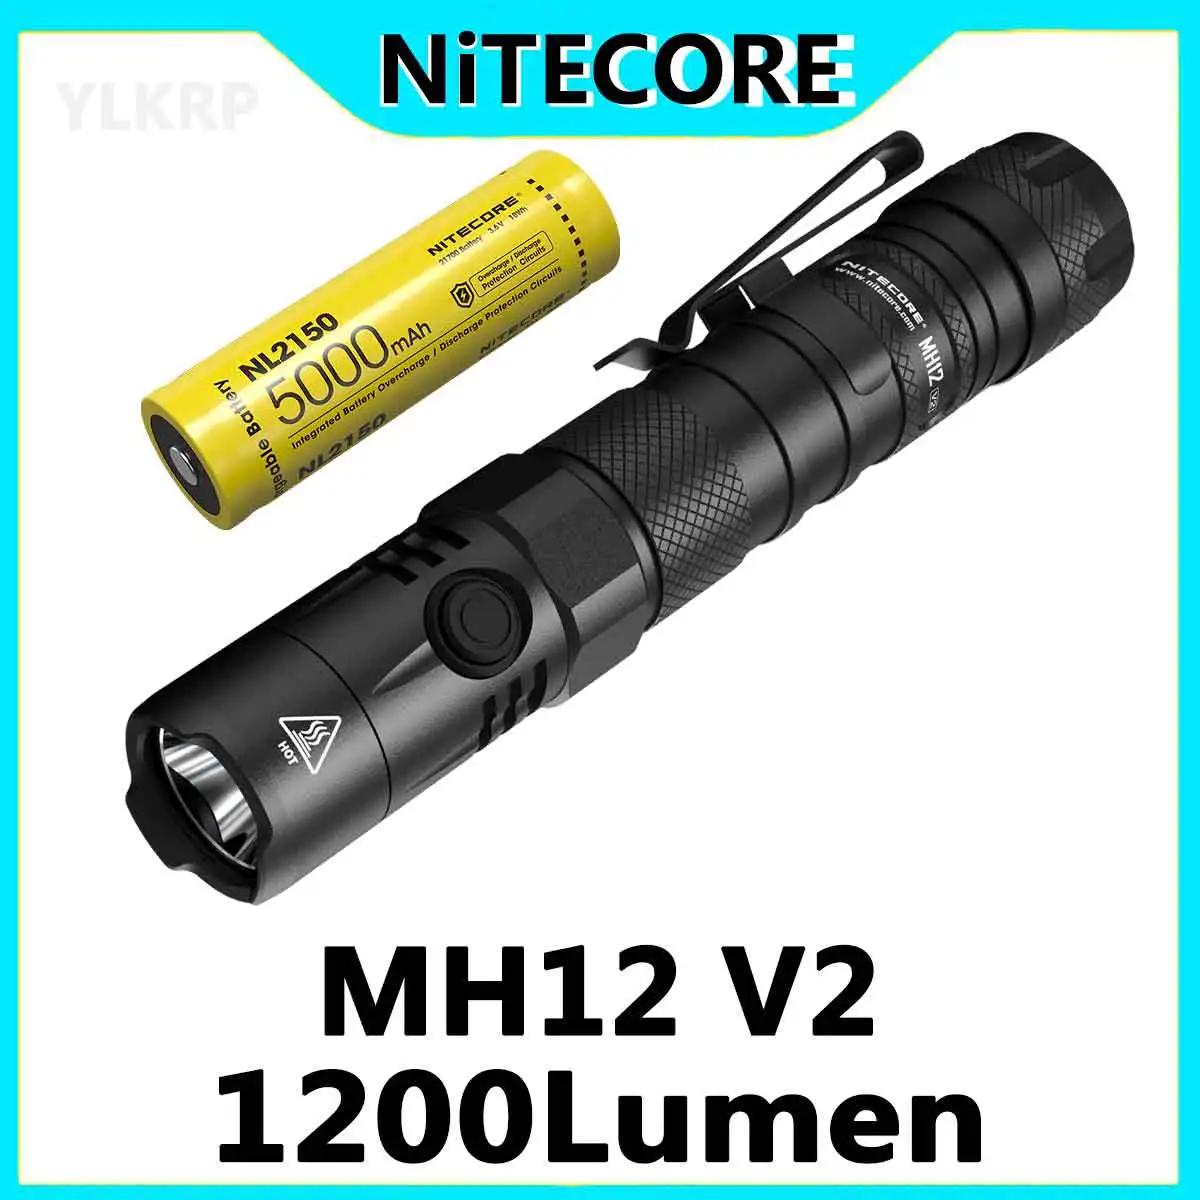 NITECORE MH12 V2